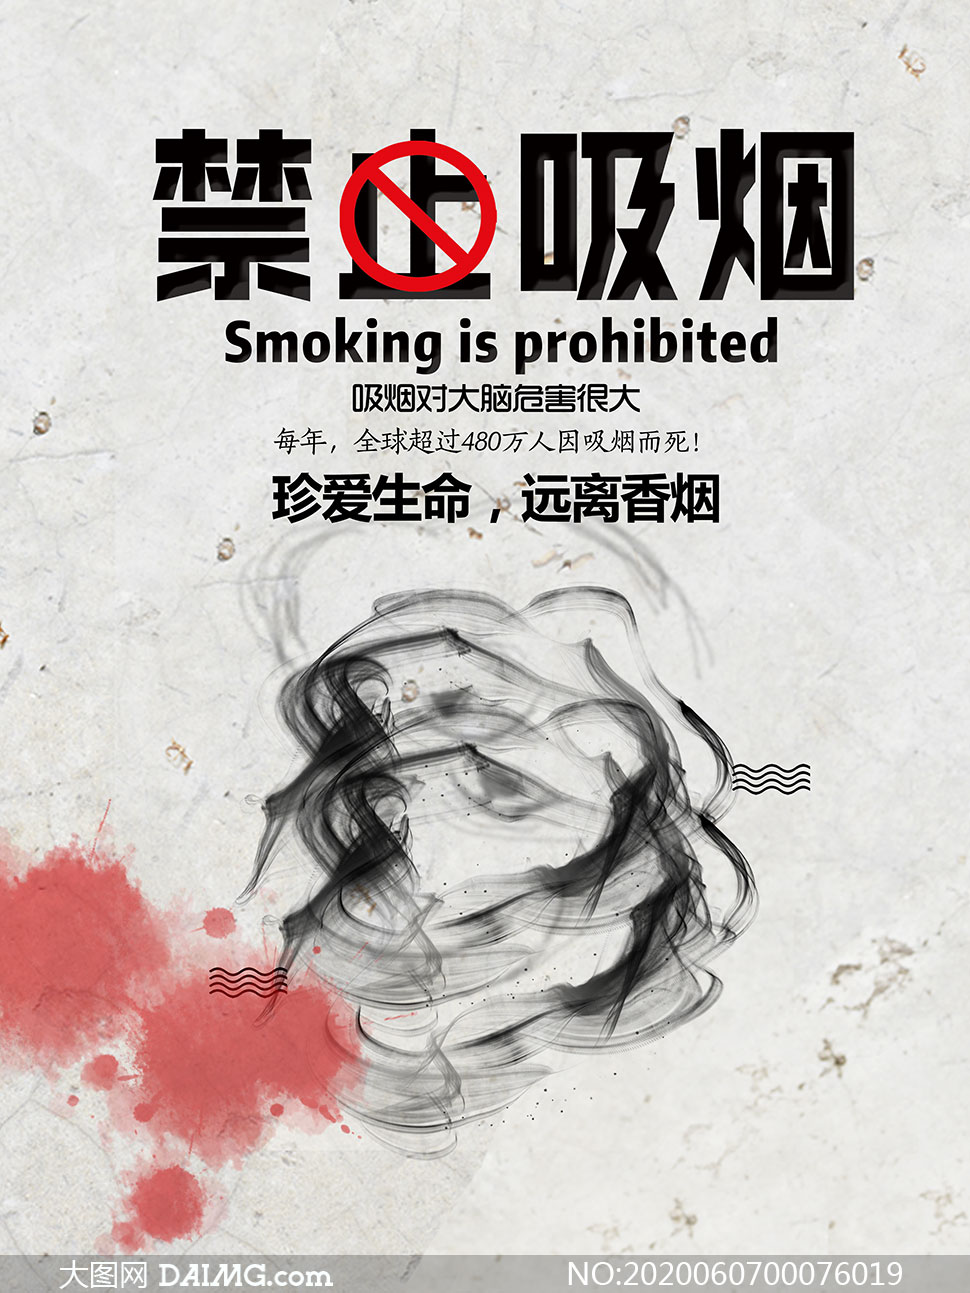 禁止吸烟公益宣传海报设计psd模板